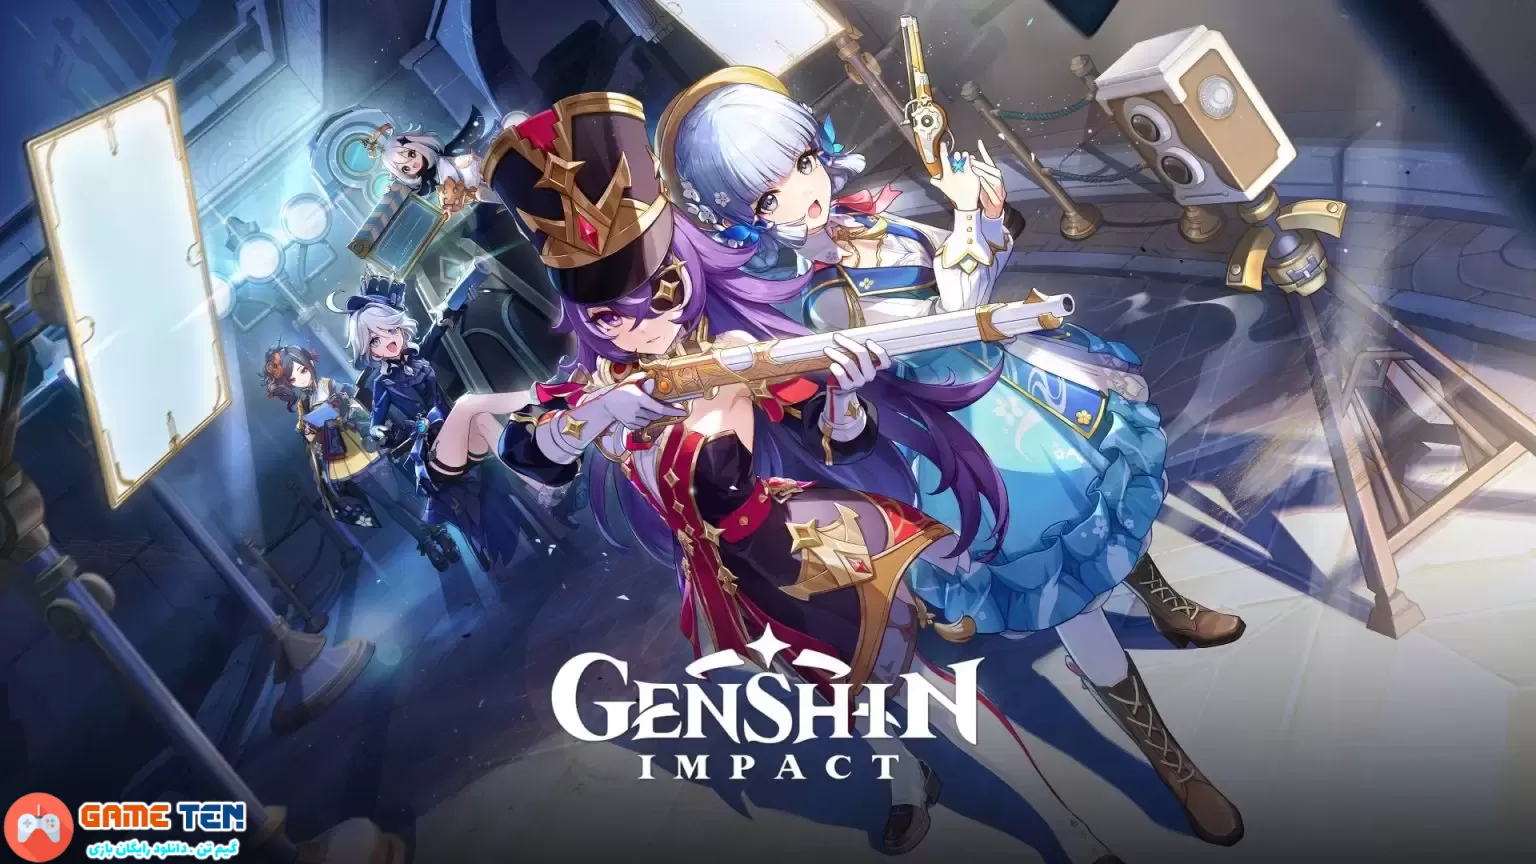 نسخه 4.3 بازی Genshin Impact در تاریخ 20 دسامبر منتشر می شود + تریلر